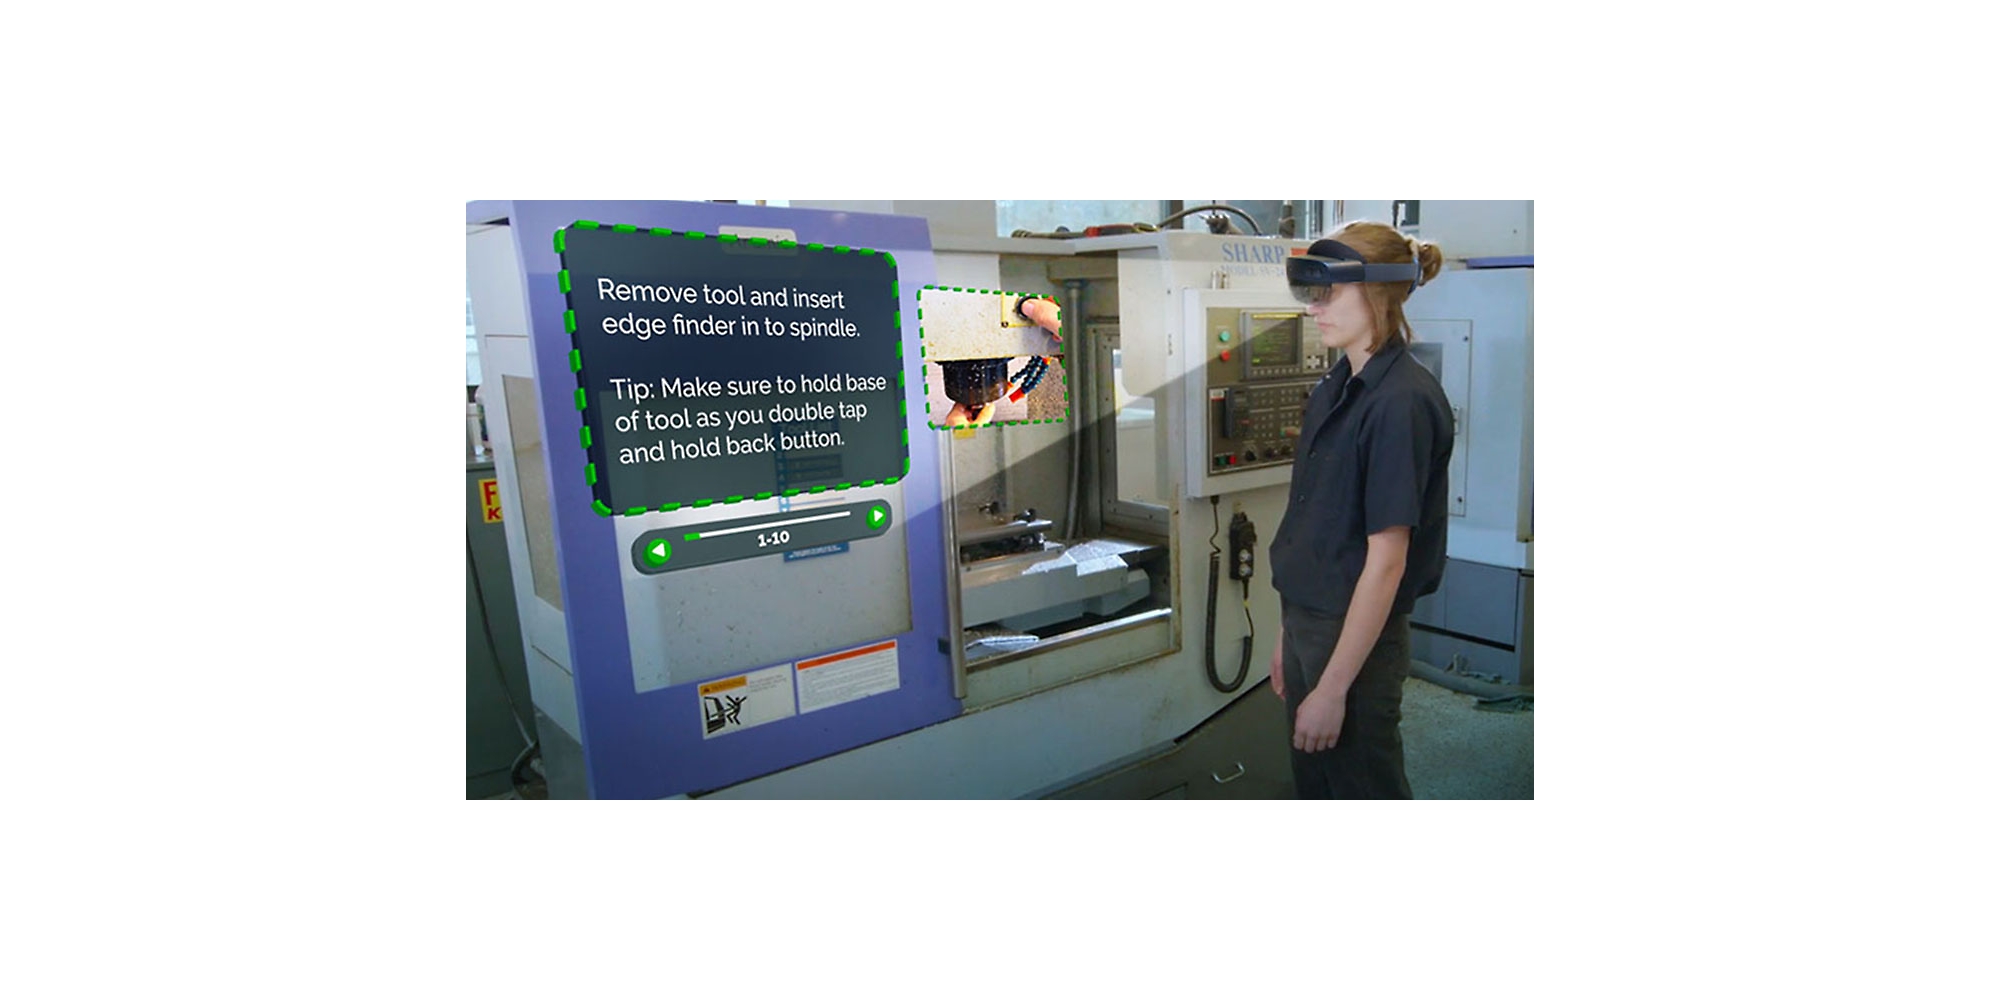 Eine Person, die HoloLens 2 trägt und sich ein Video ansieht, das beschreibt, wie eine bestimmte Aufgabe mit begleitenden Anweisungen in Mixed Reality ausgeführt wird.